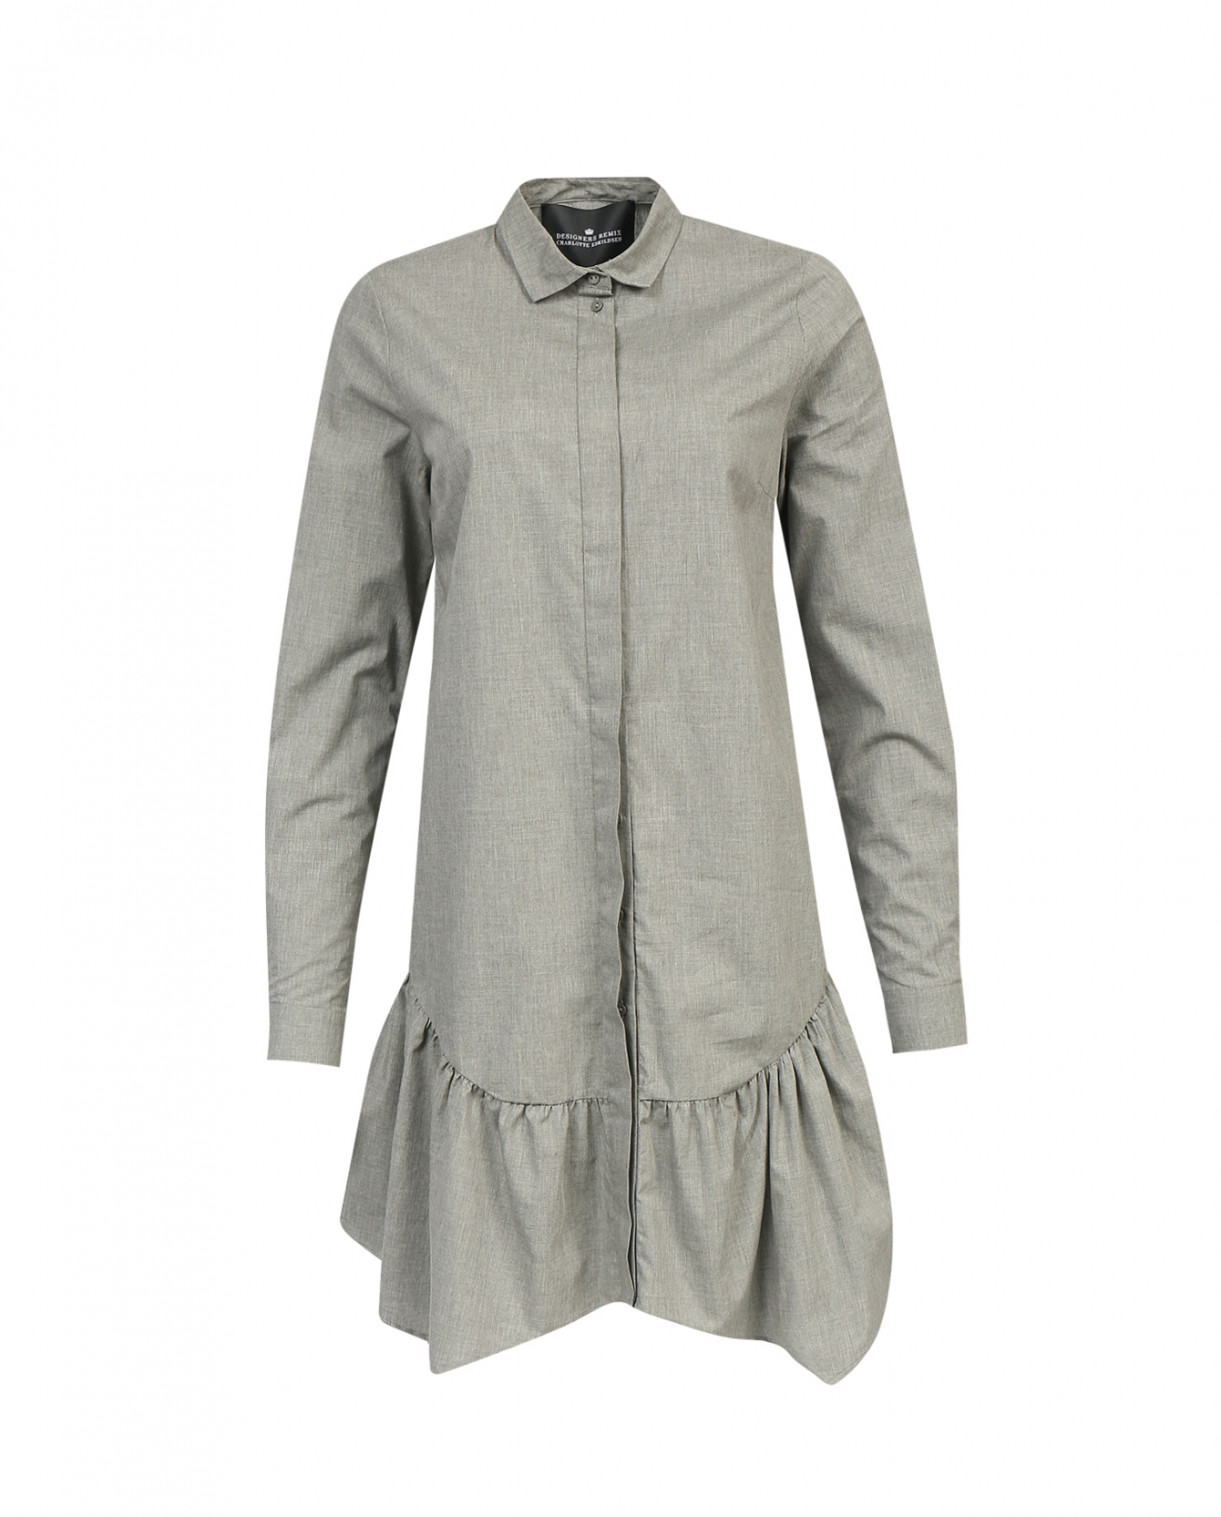 Платье-блуза из хлопка DESIGNERS REMIX  –  Общий вид  – Цвет:  Серый